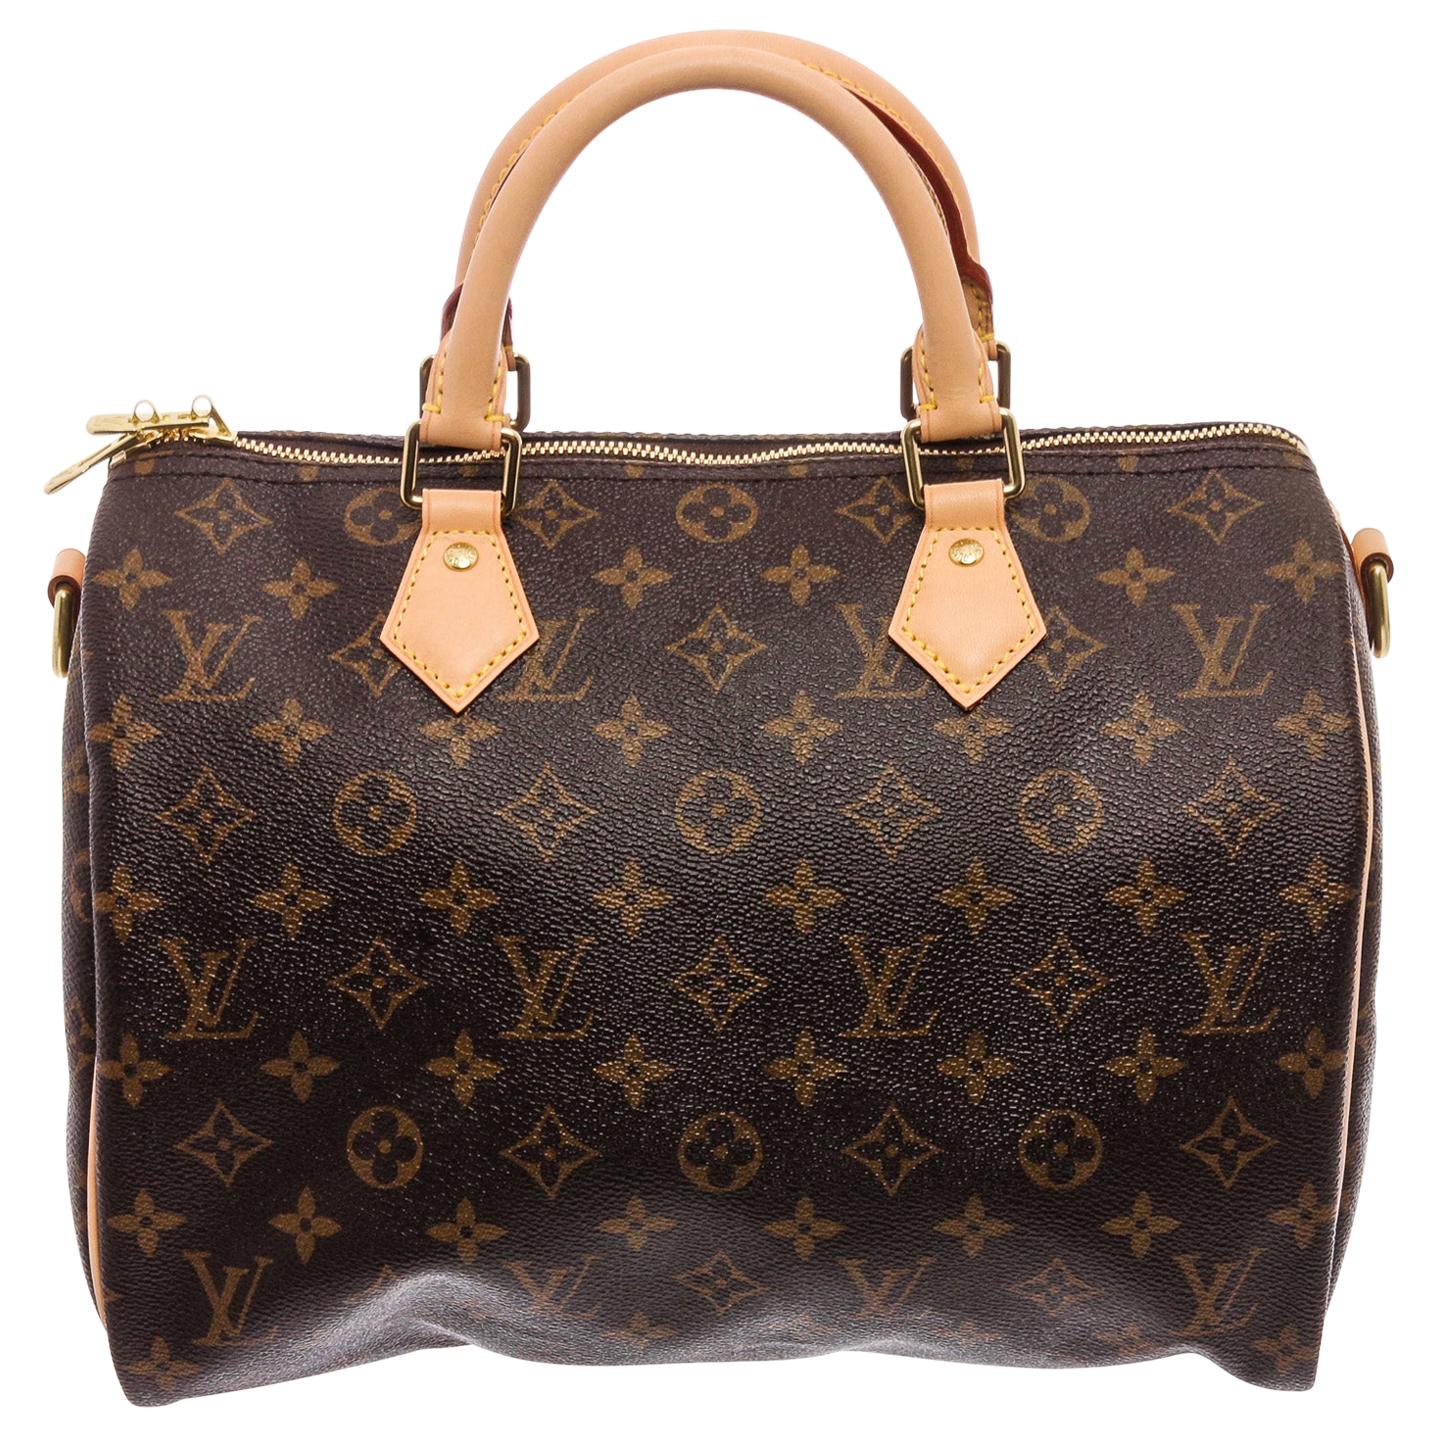 Louis Vuitton Monogram Canvas Leather Bandouliere Speedy 30 Bag